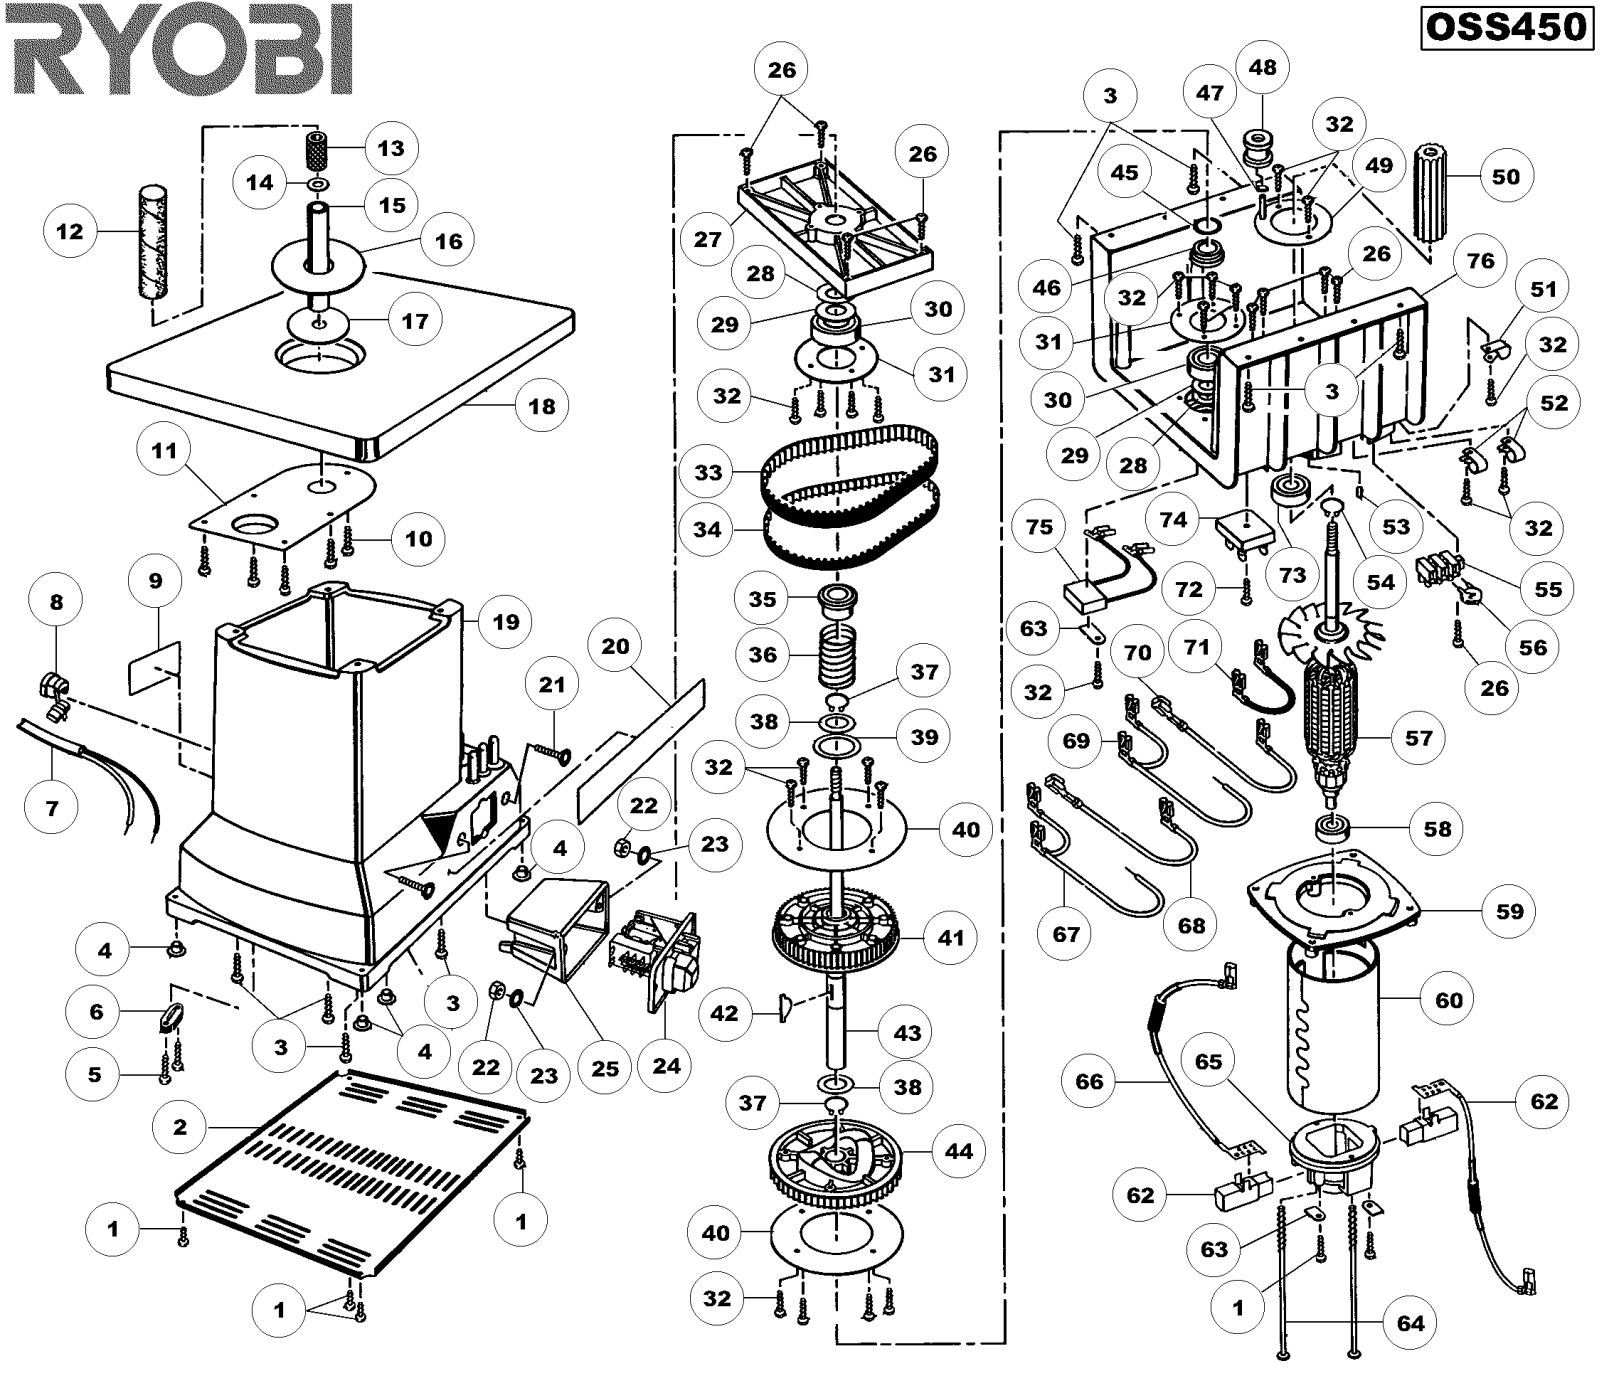 Ryobi OSS450 Manual